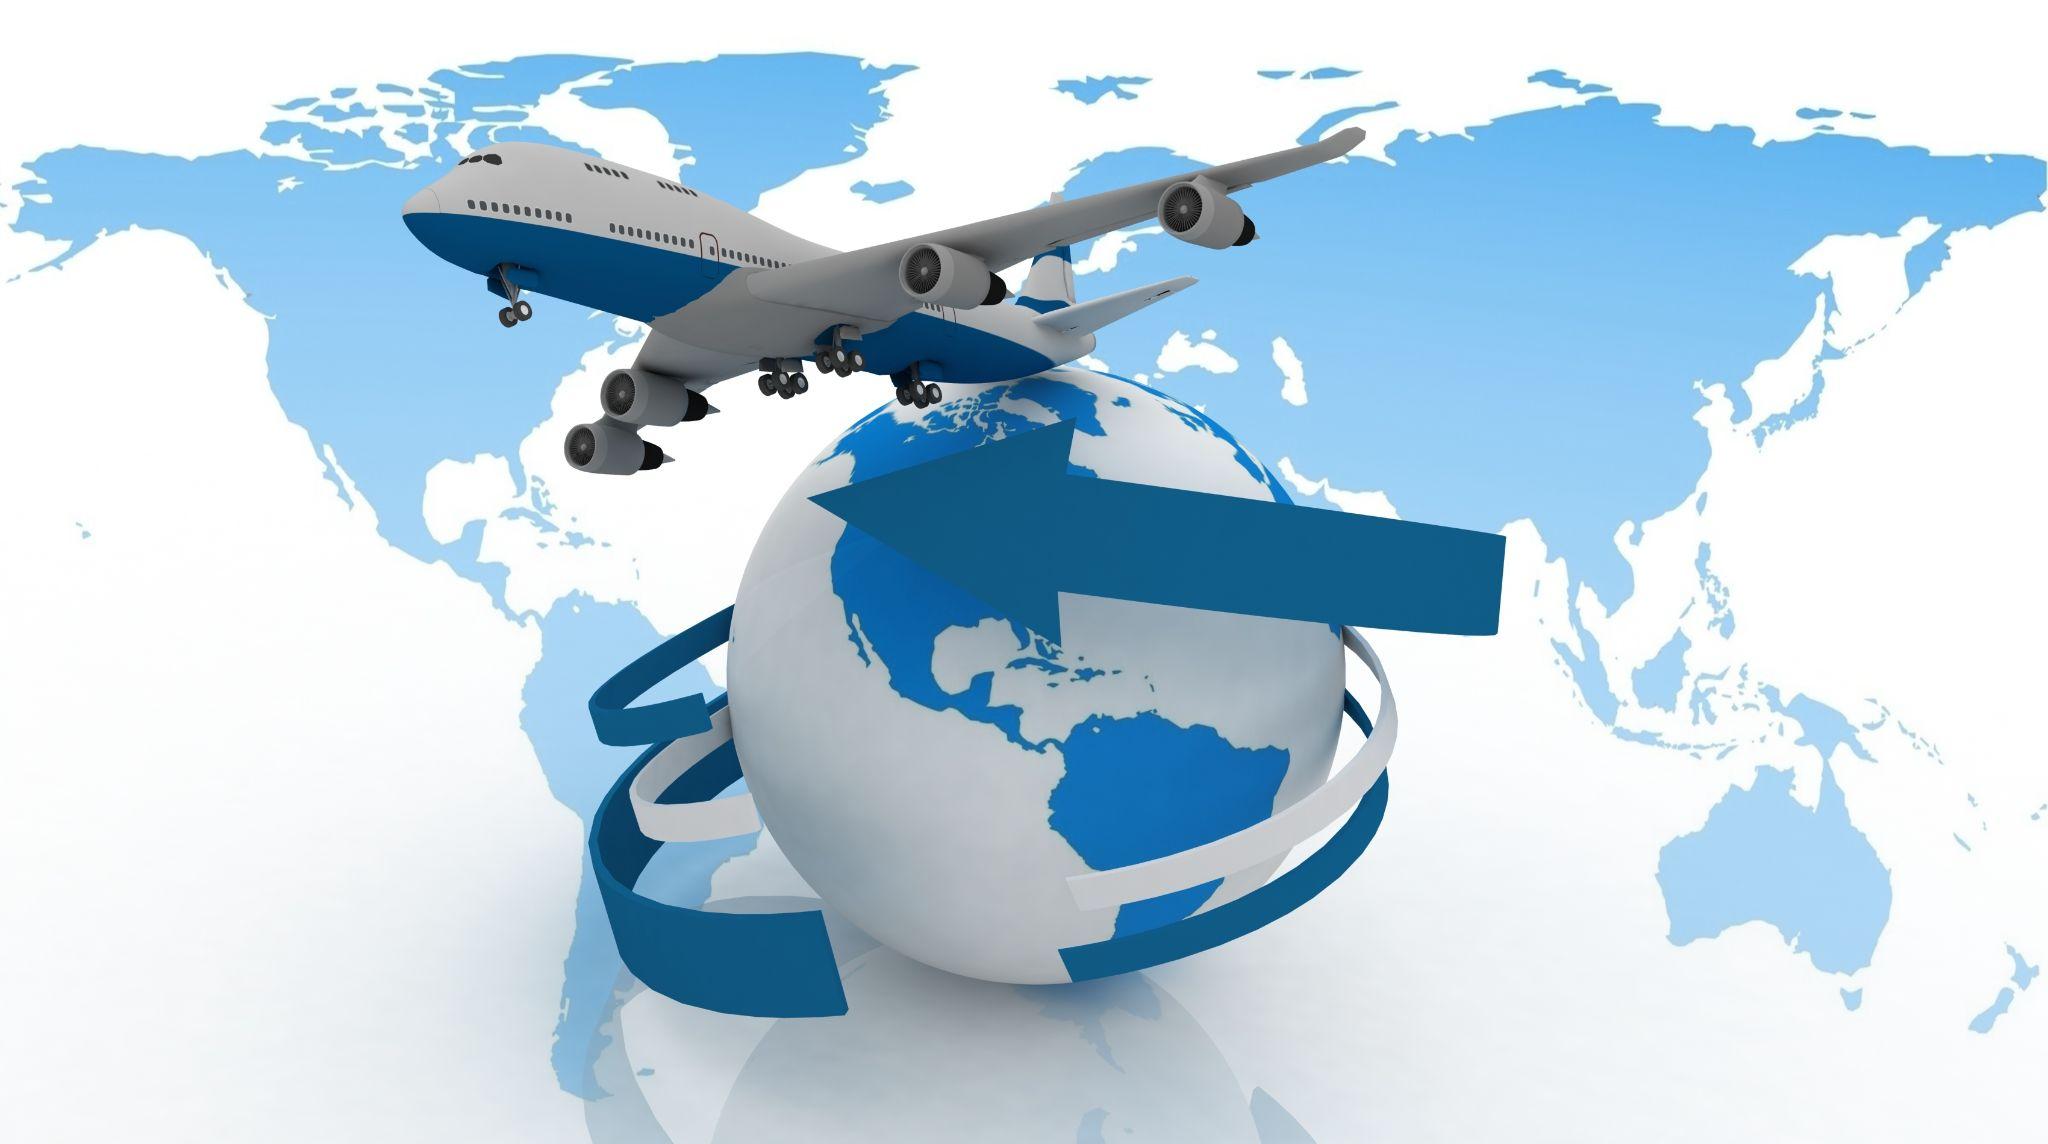 Passenger jet airplane travels around the world.